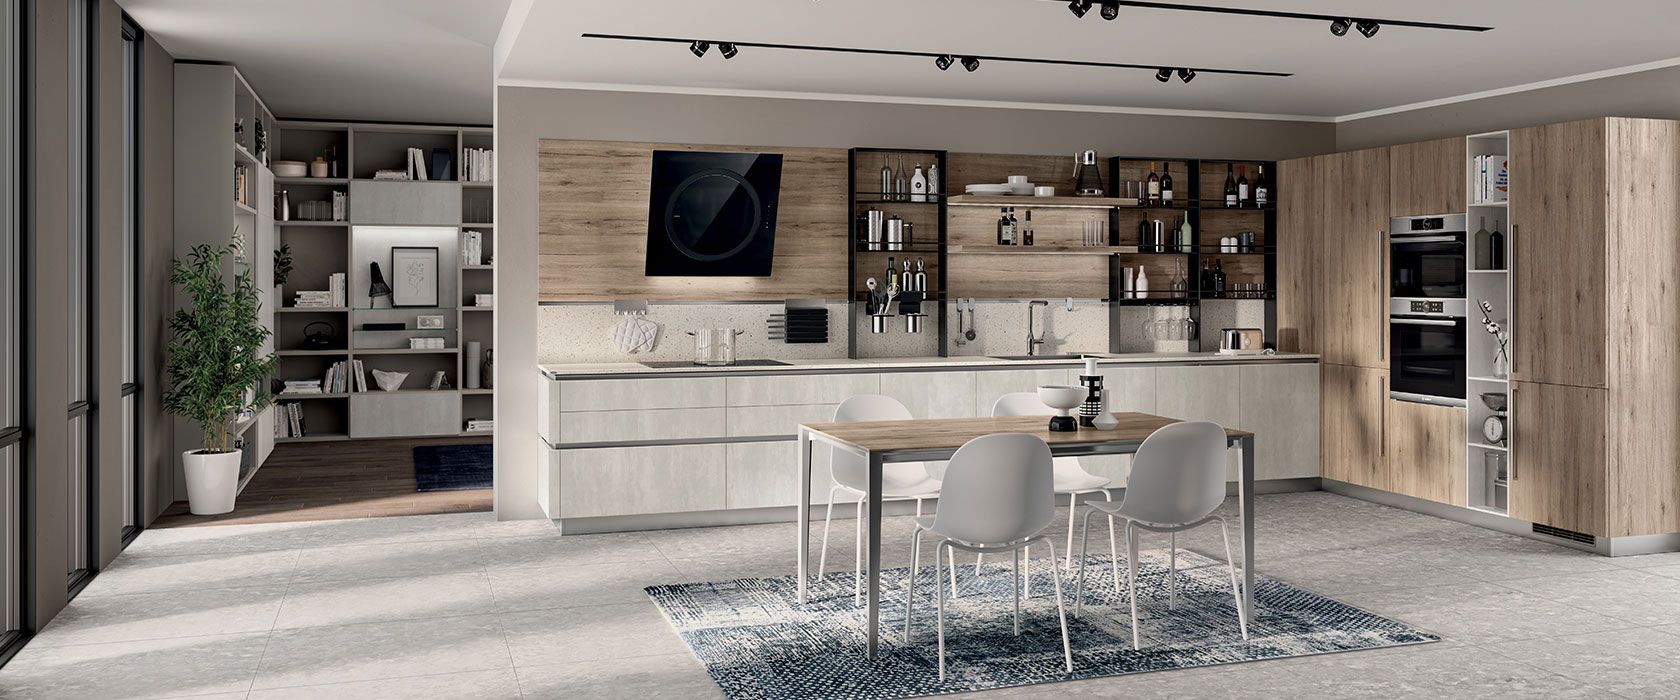 طراحی کابینت مدرن آشپزخانه 2019